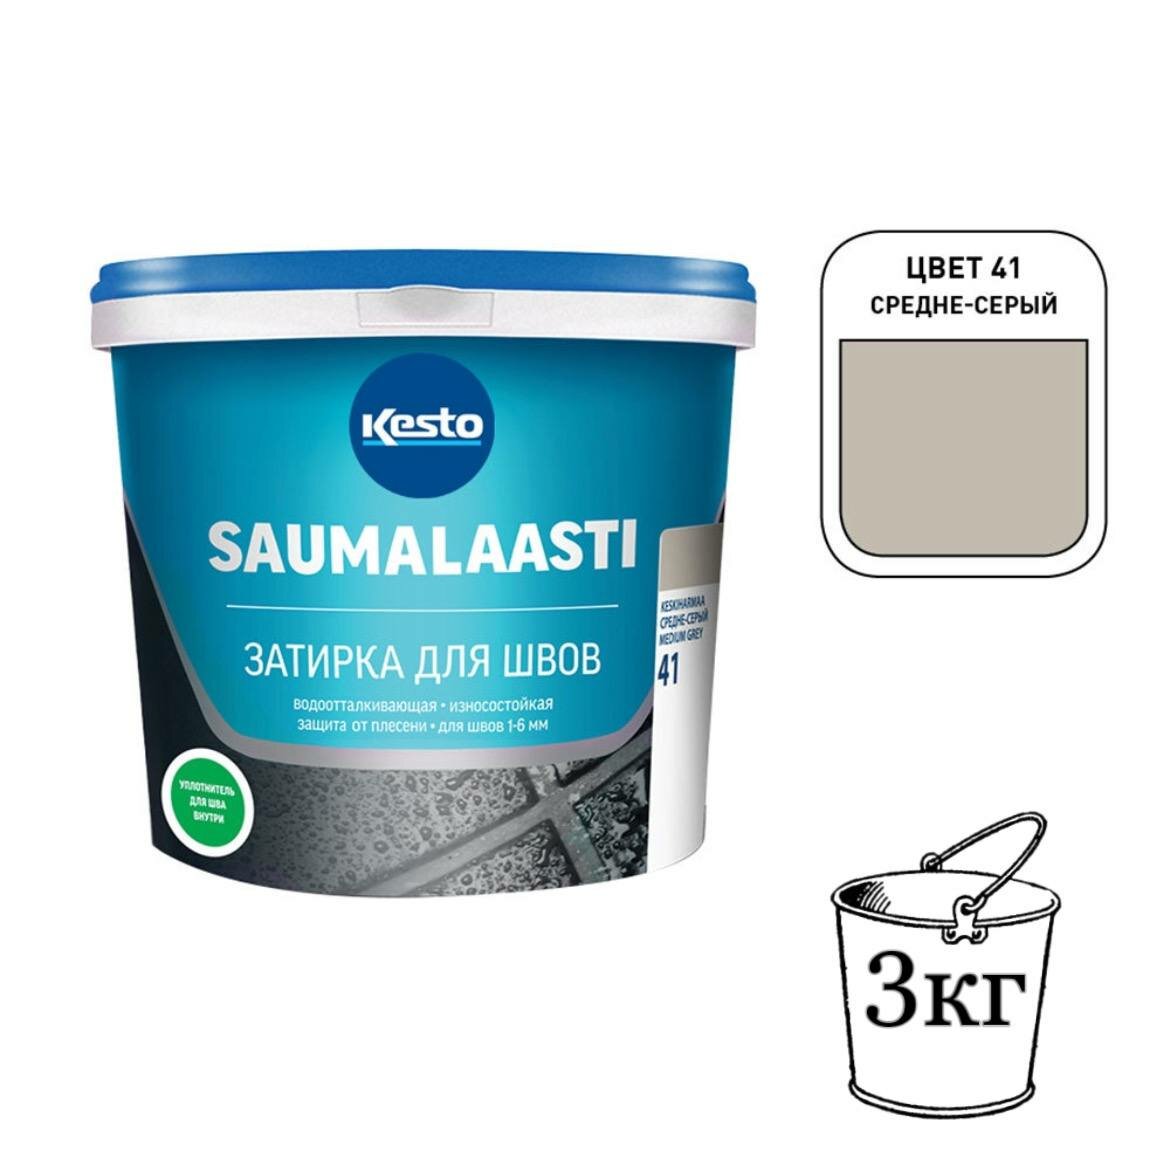 Затирка Kesto Saumalaasti 41 3 кг, средне-серый T3568.003.